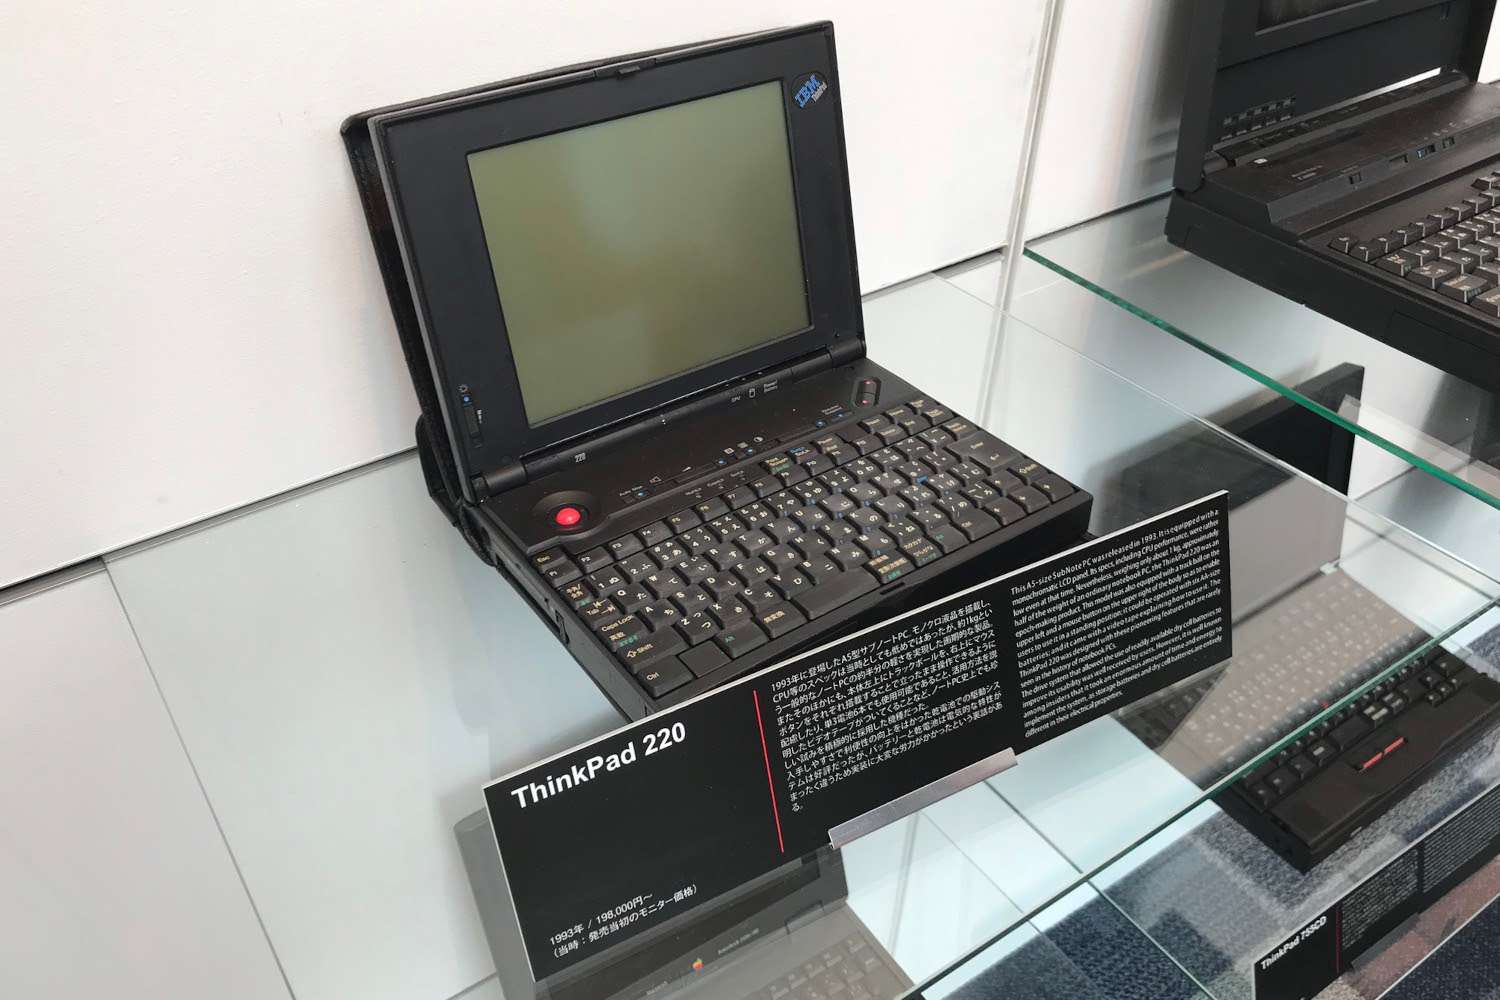 Lenovo ThinkPad 220 z roku 1993